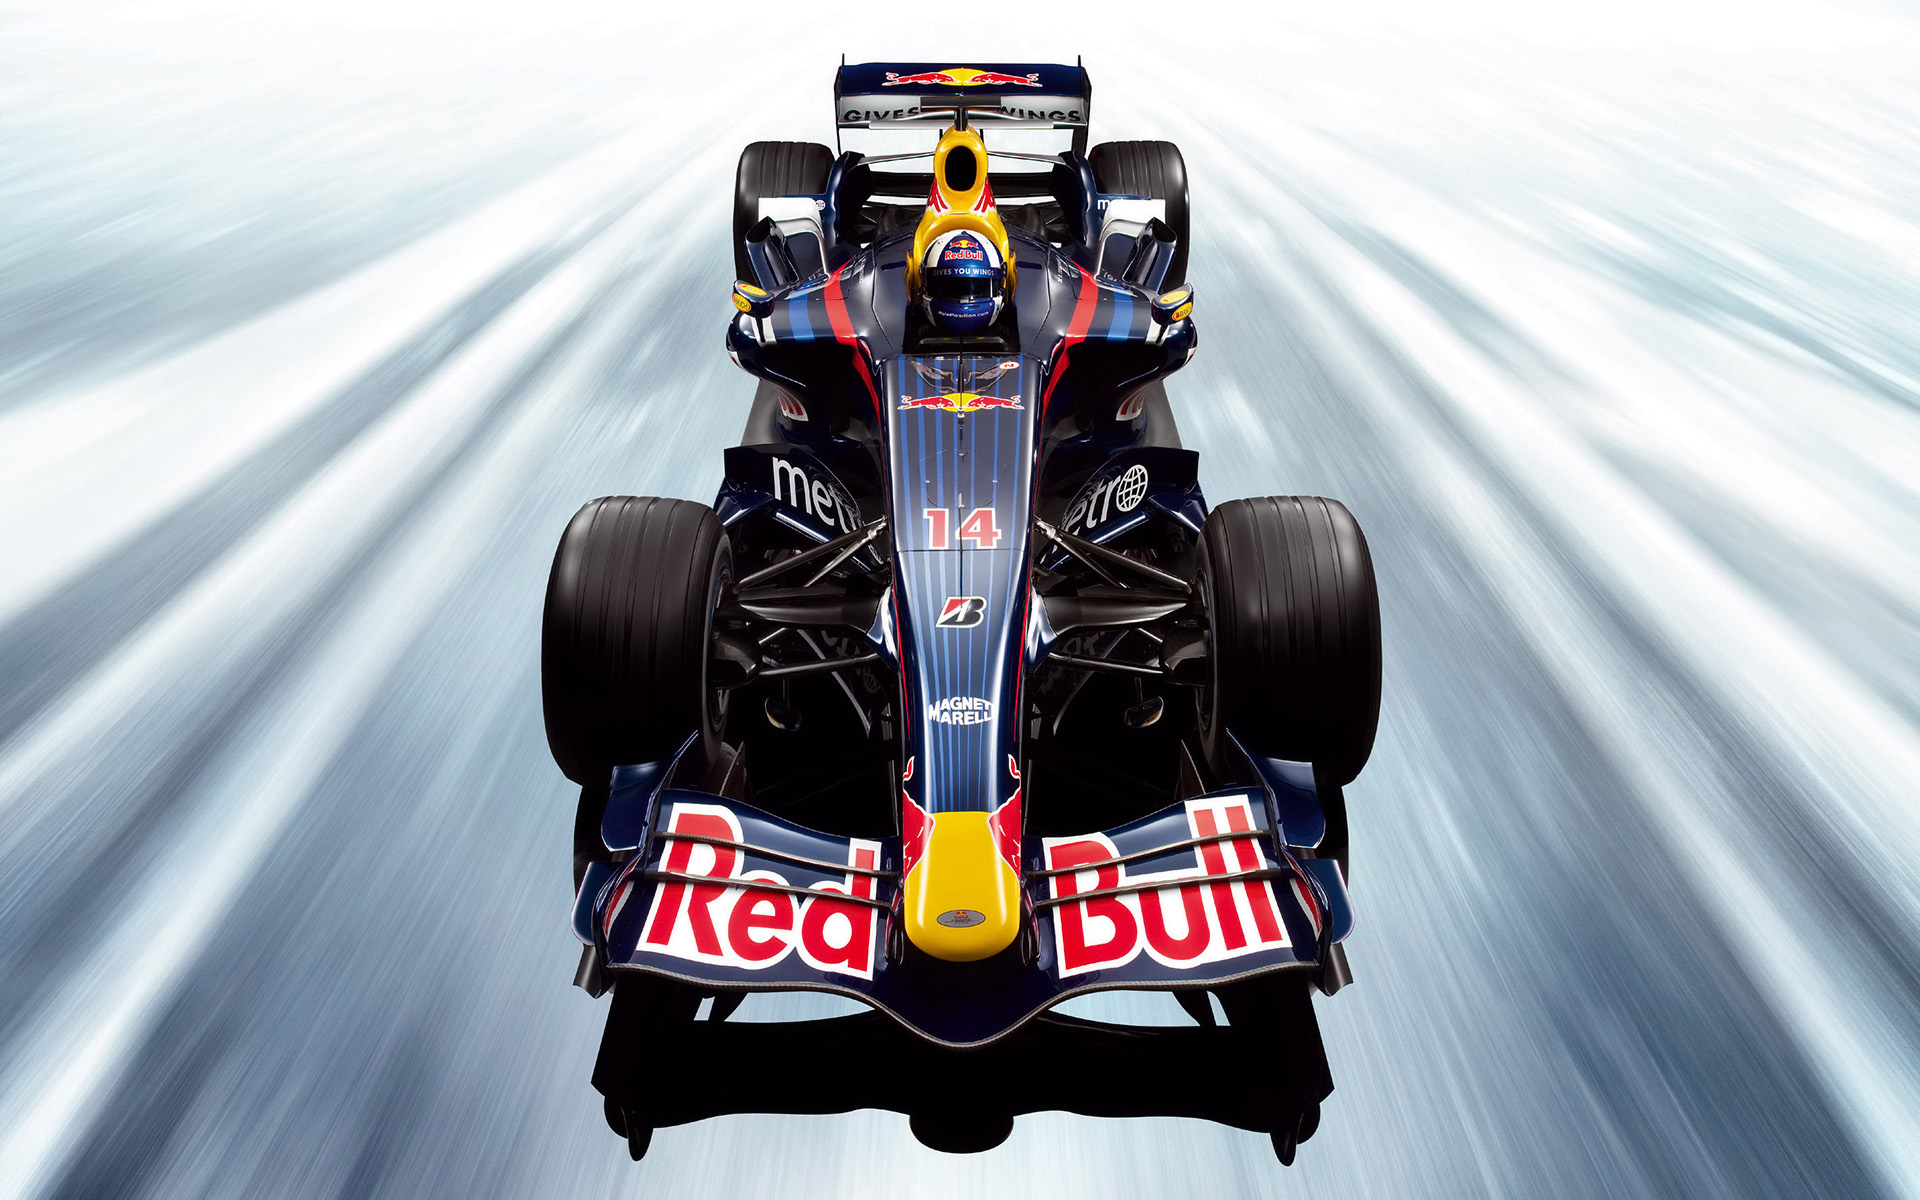  2007 Red Bull Racing RB3 Wallpaper.